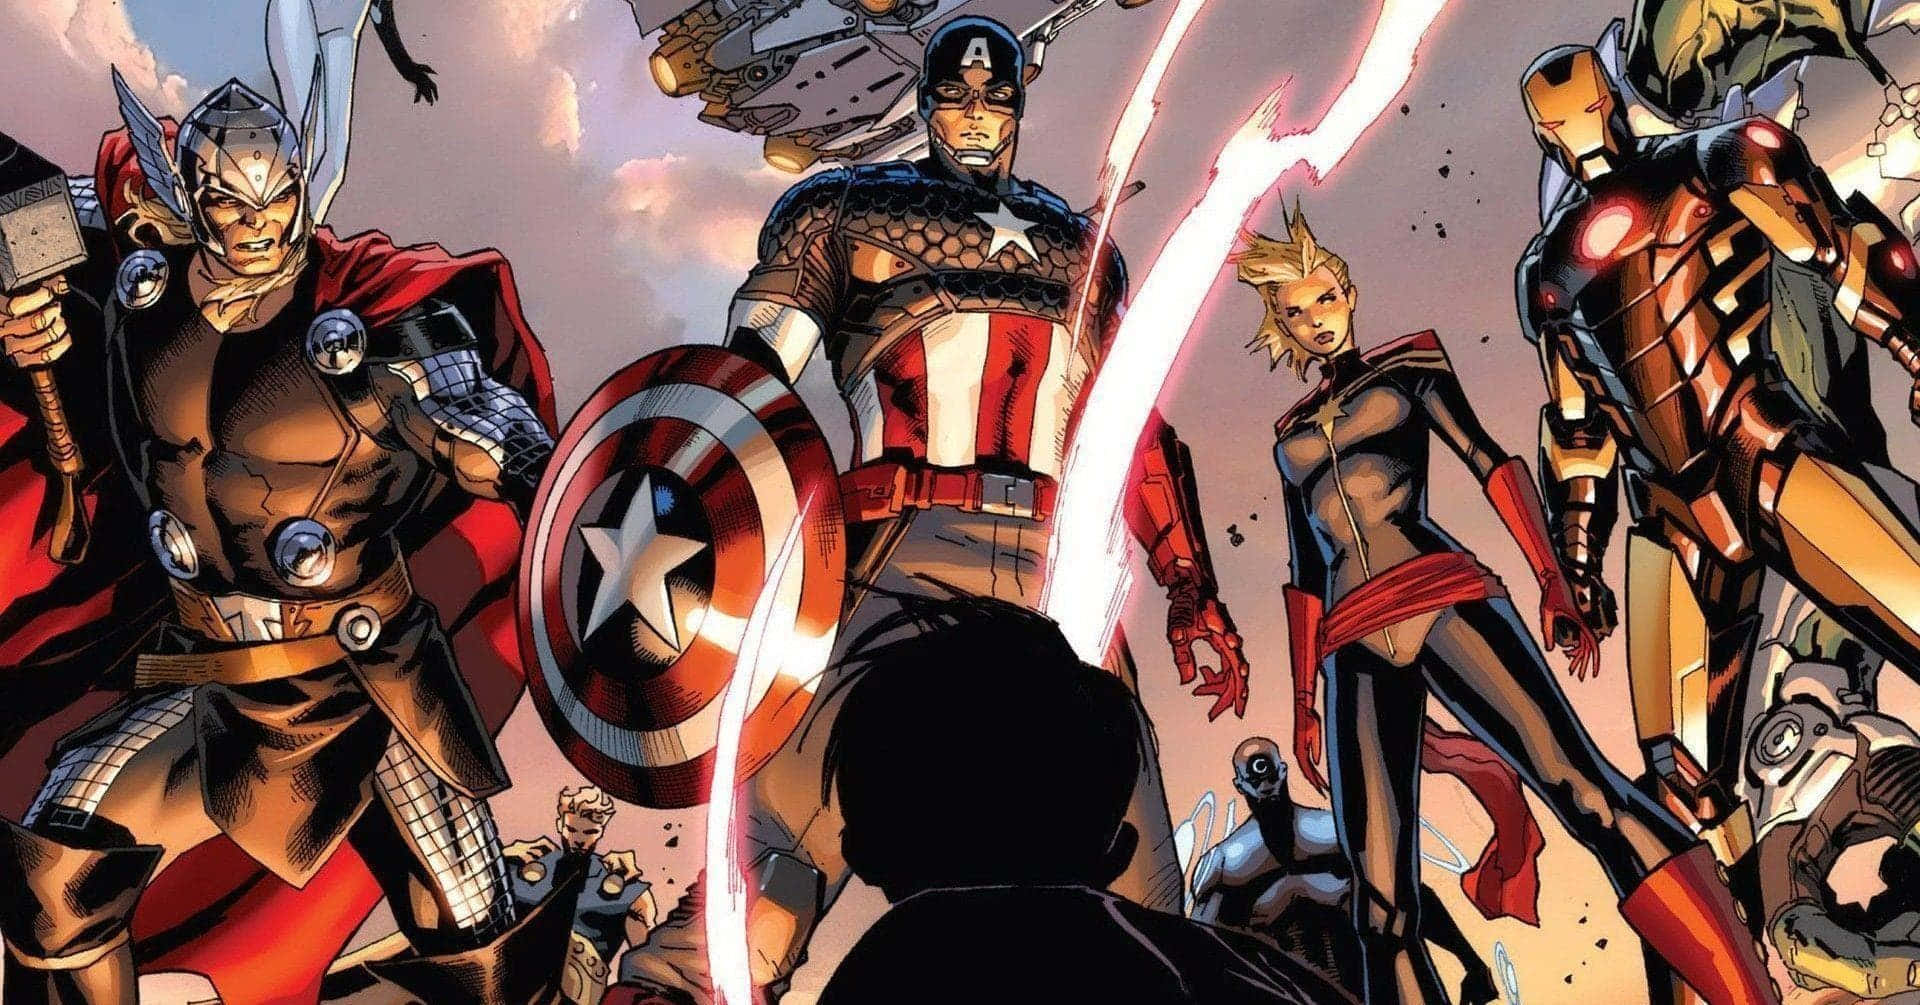 Avengersavengers (the Avengers)